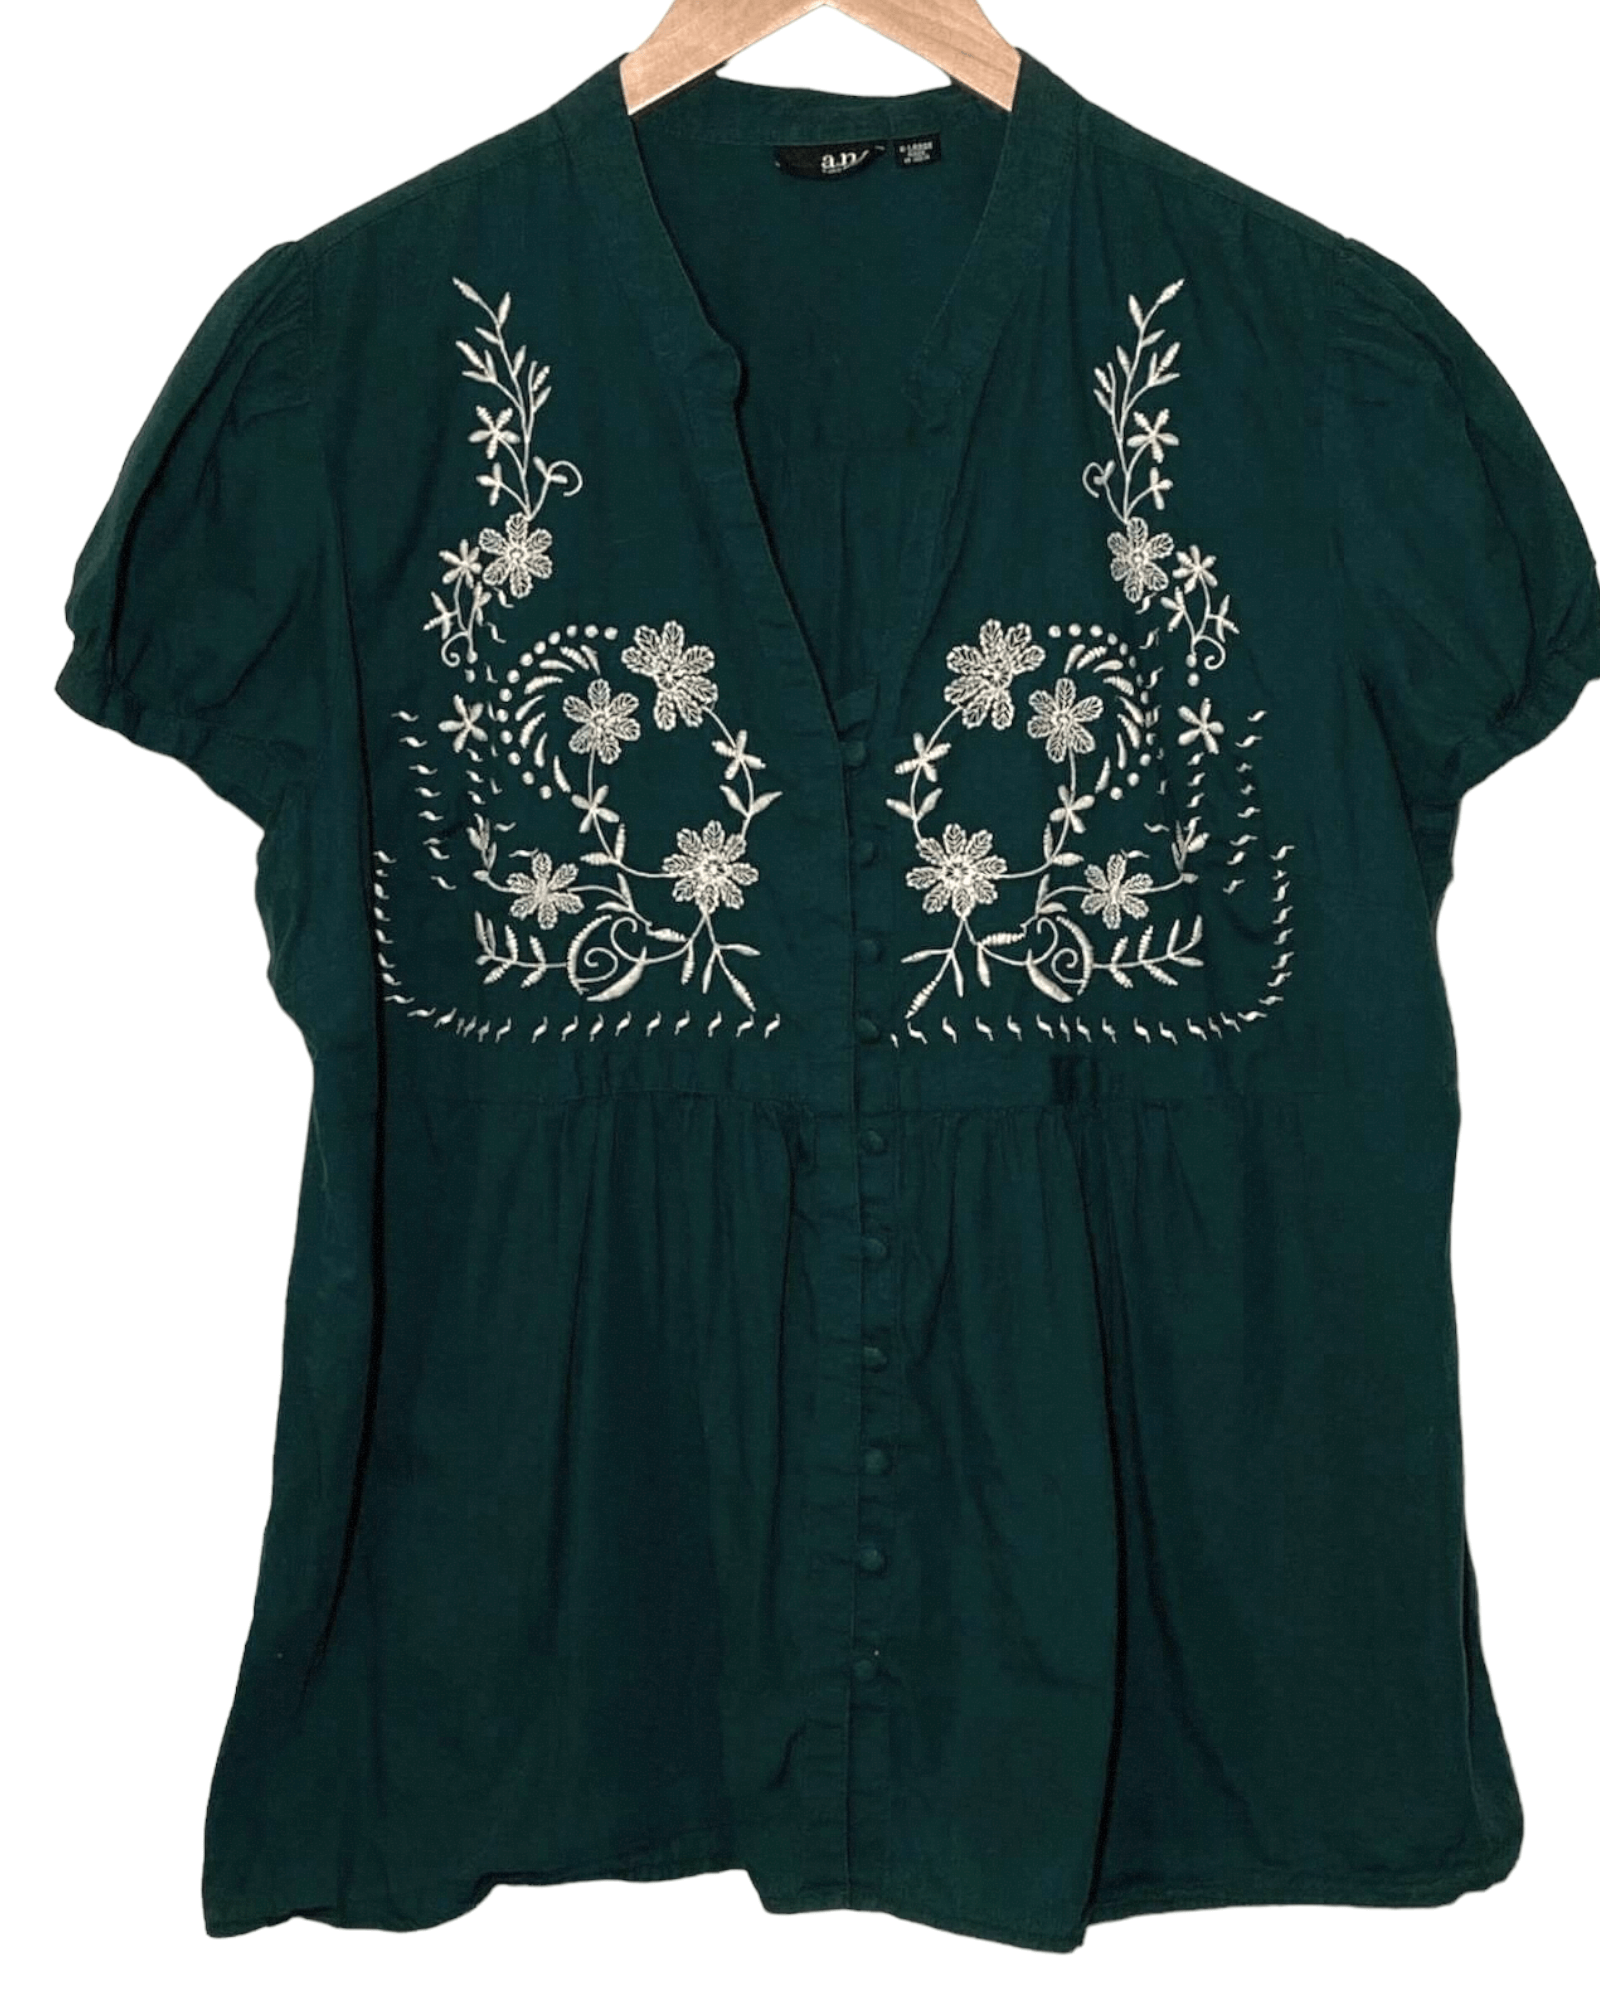 Soft Autumn ANA fir green floral embroidered shirt